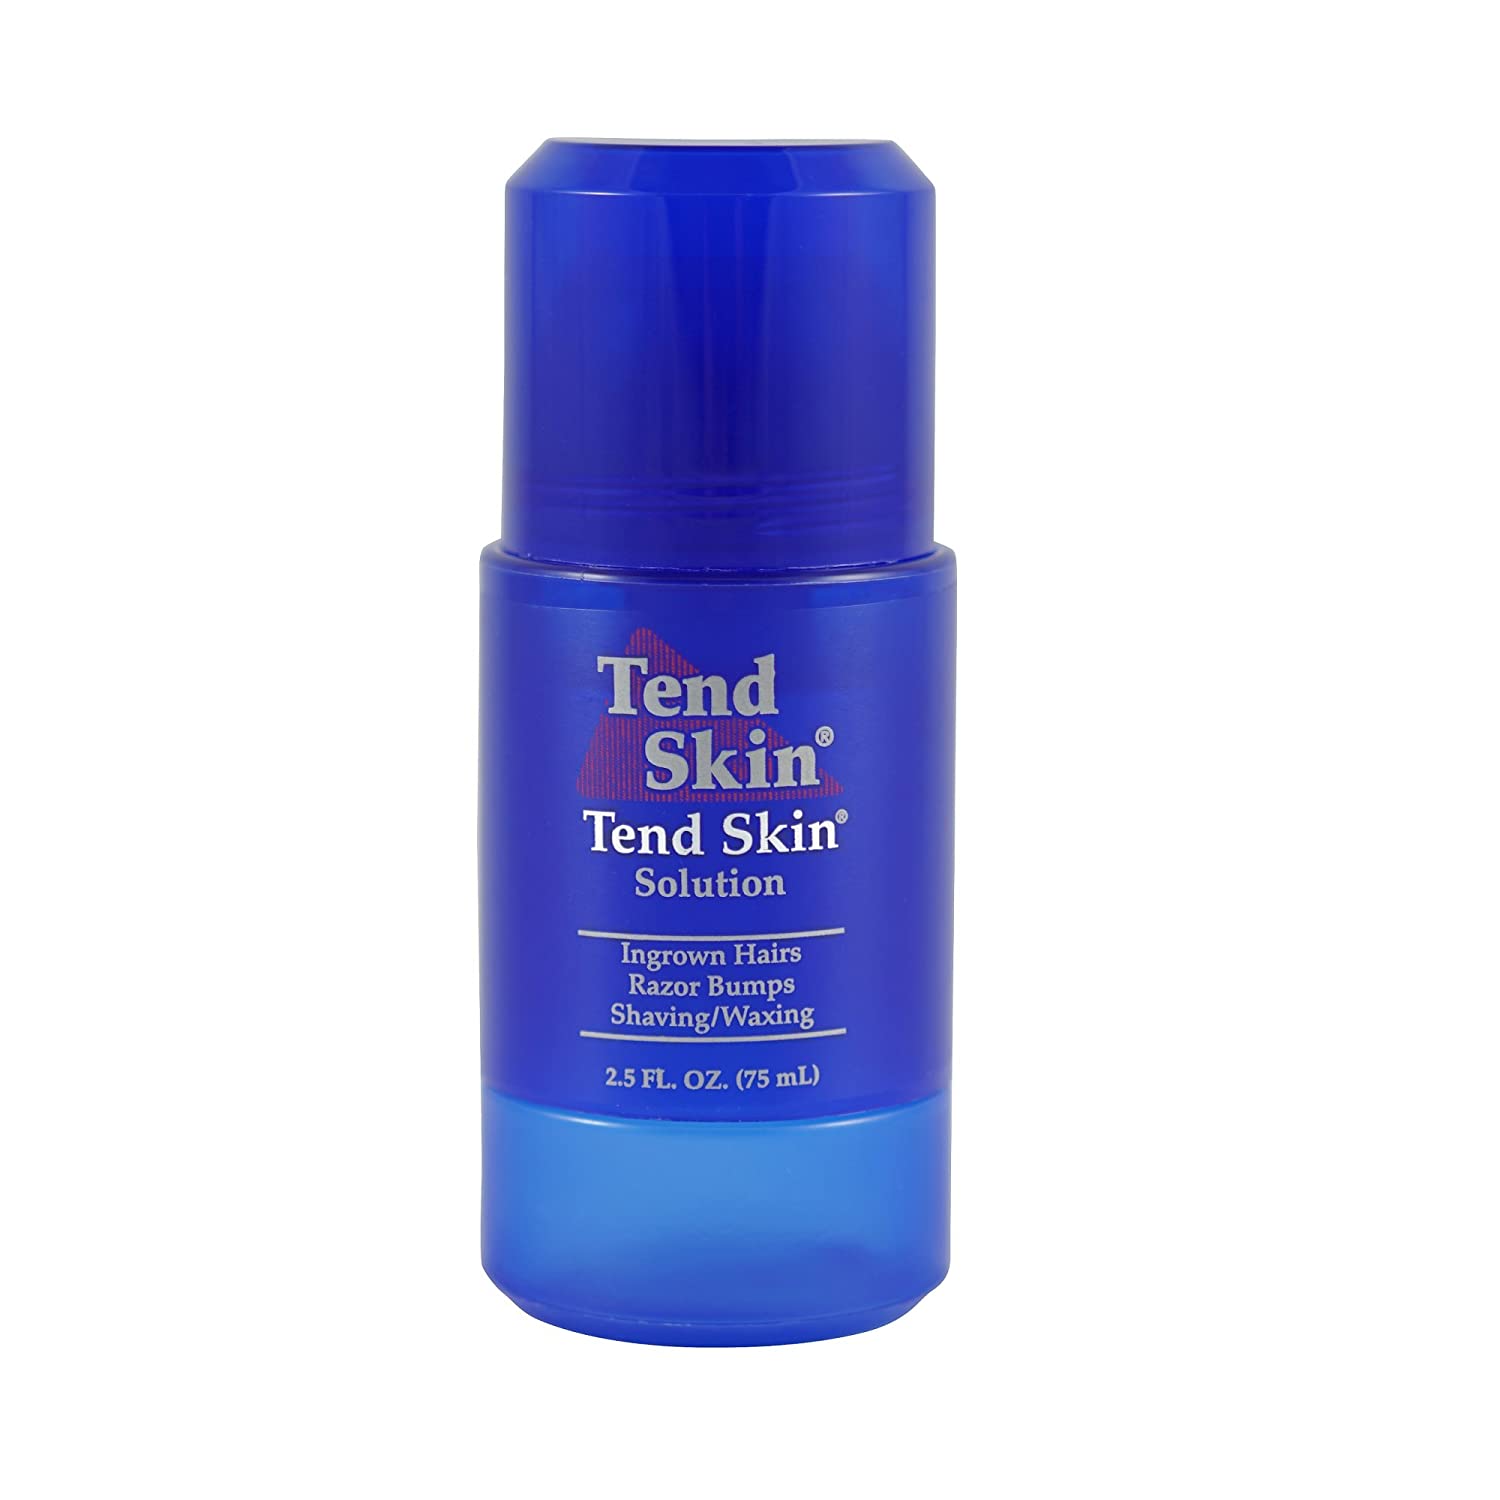 Tend Skin Air Shave Gel